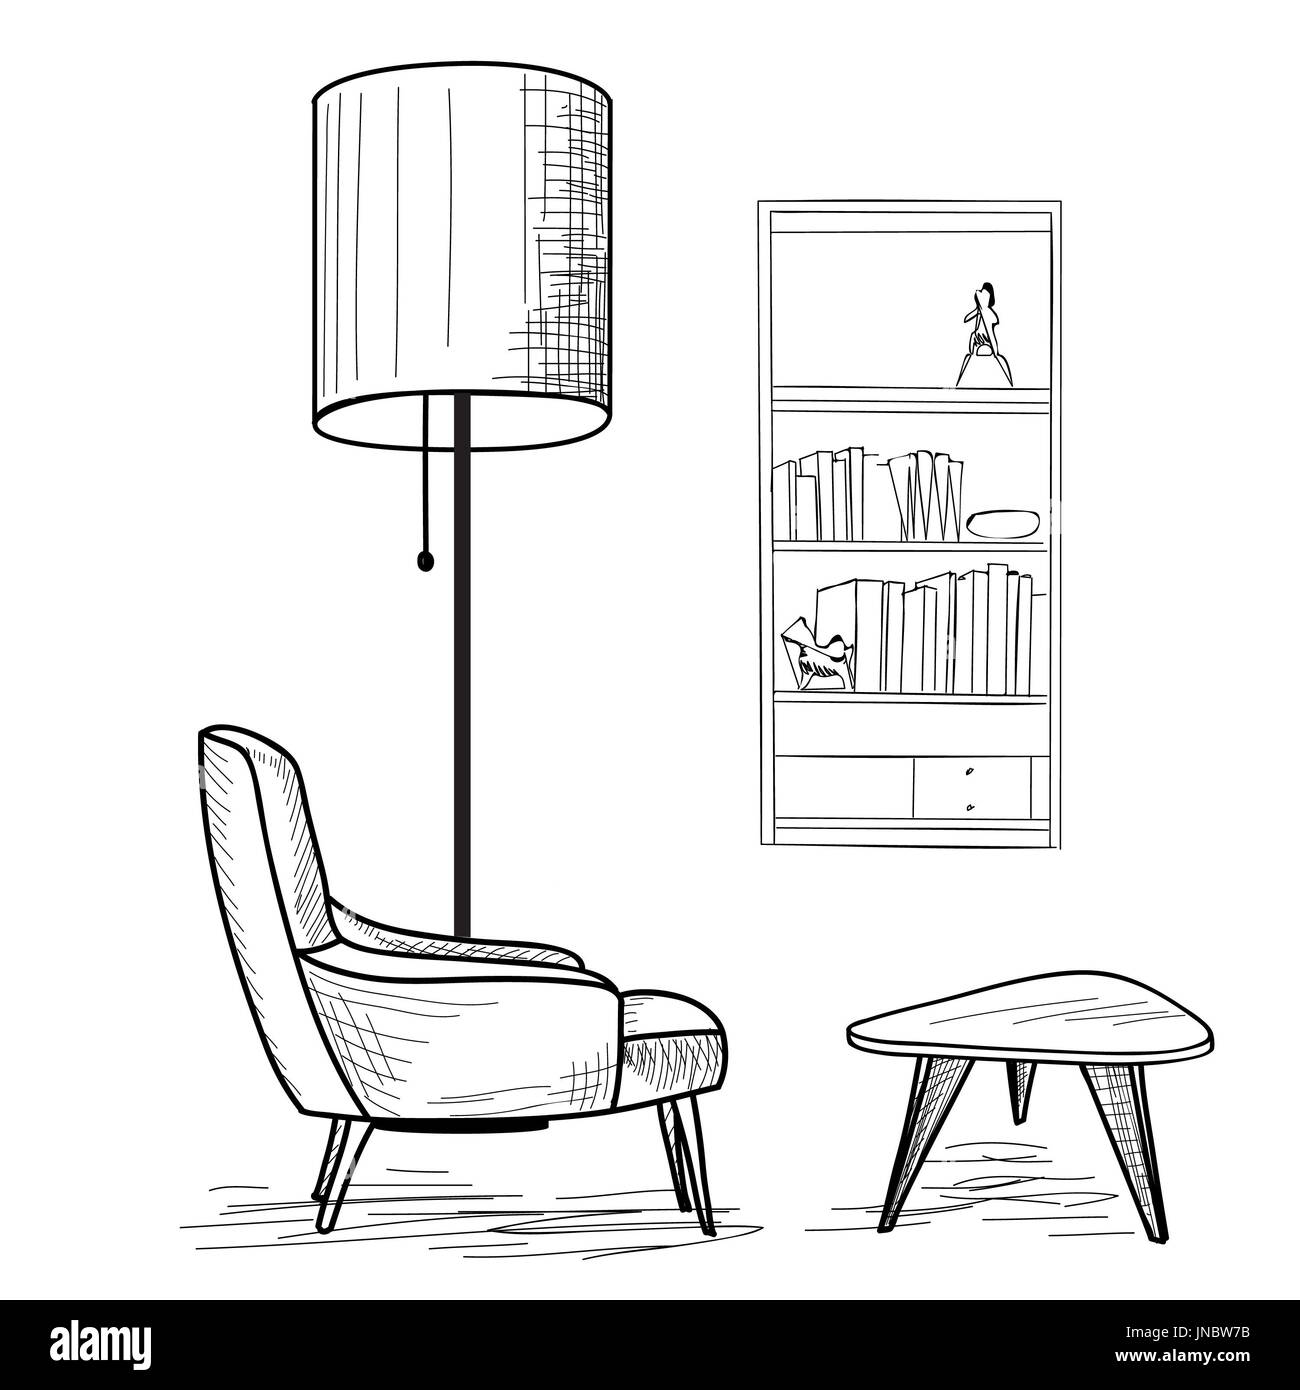 Inneneinrichtung des Wohnzimmers mit Sessel, Tisch, Buch-Regal und Stehleuchte. Lounge-Konzept-Innenraum... Flache klassische, moderne Möbeldesign in 196 Stockfoto